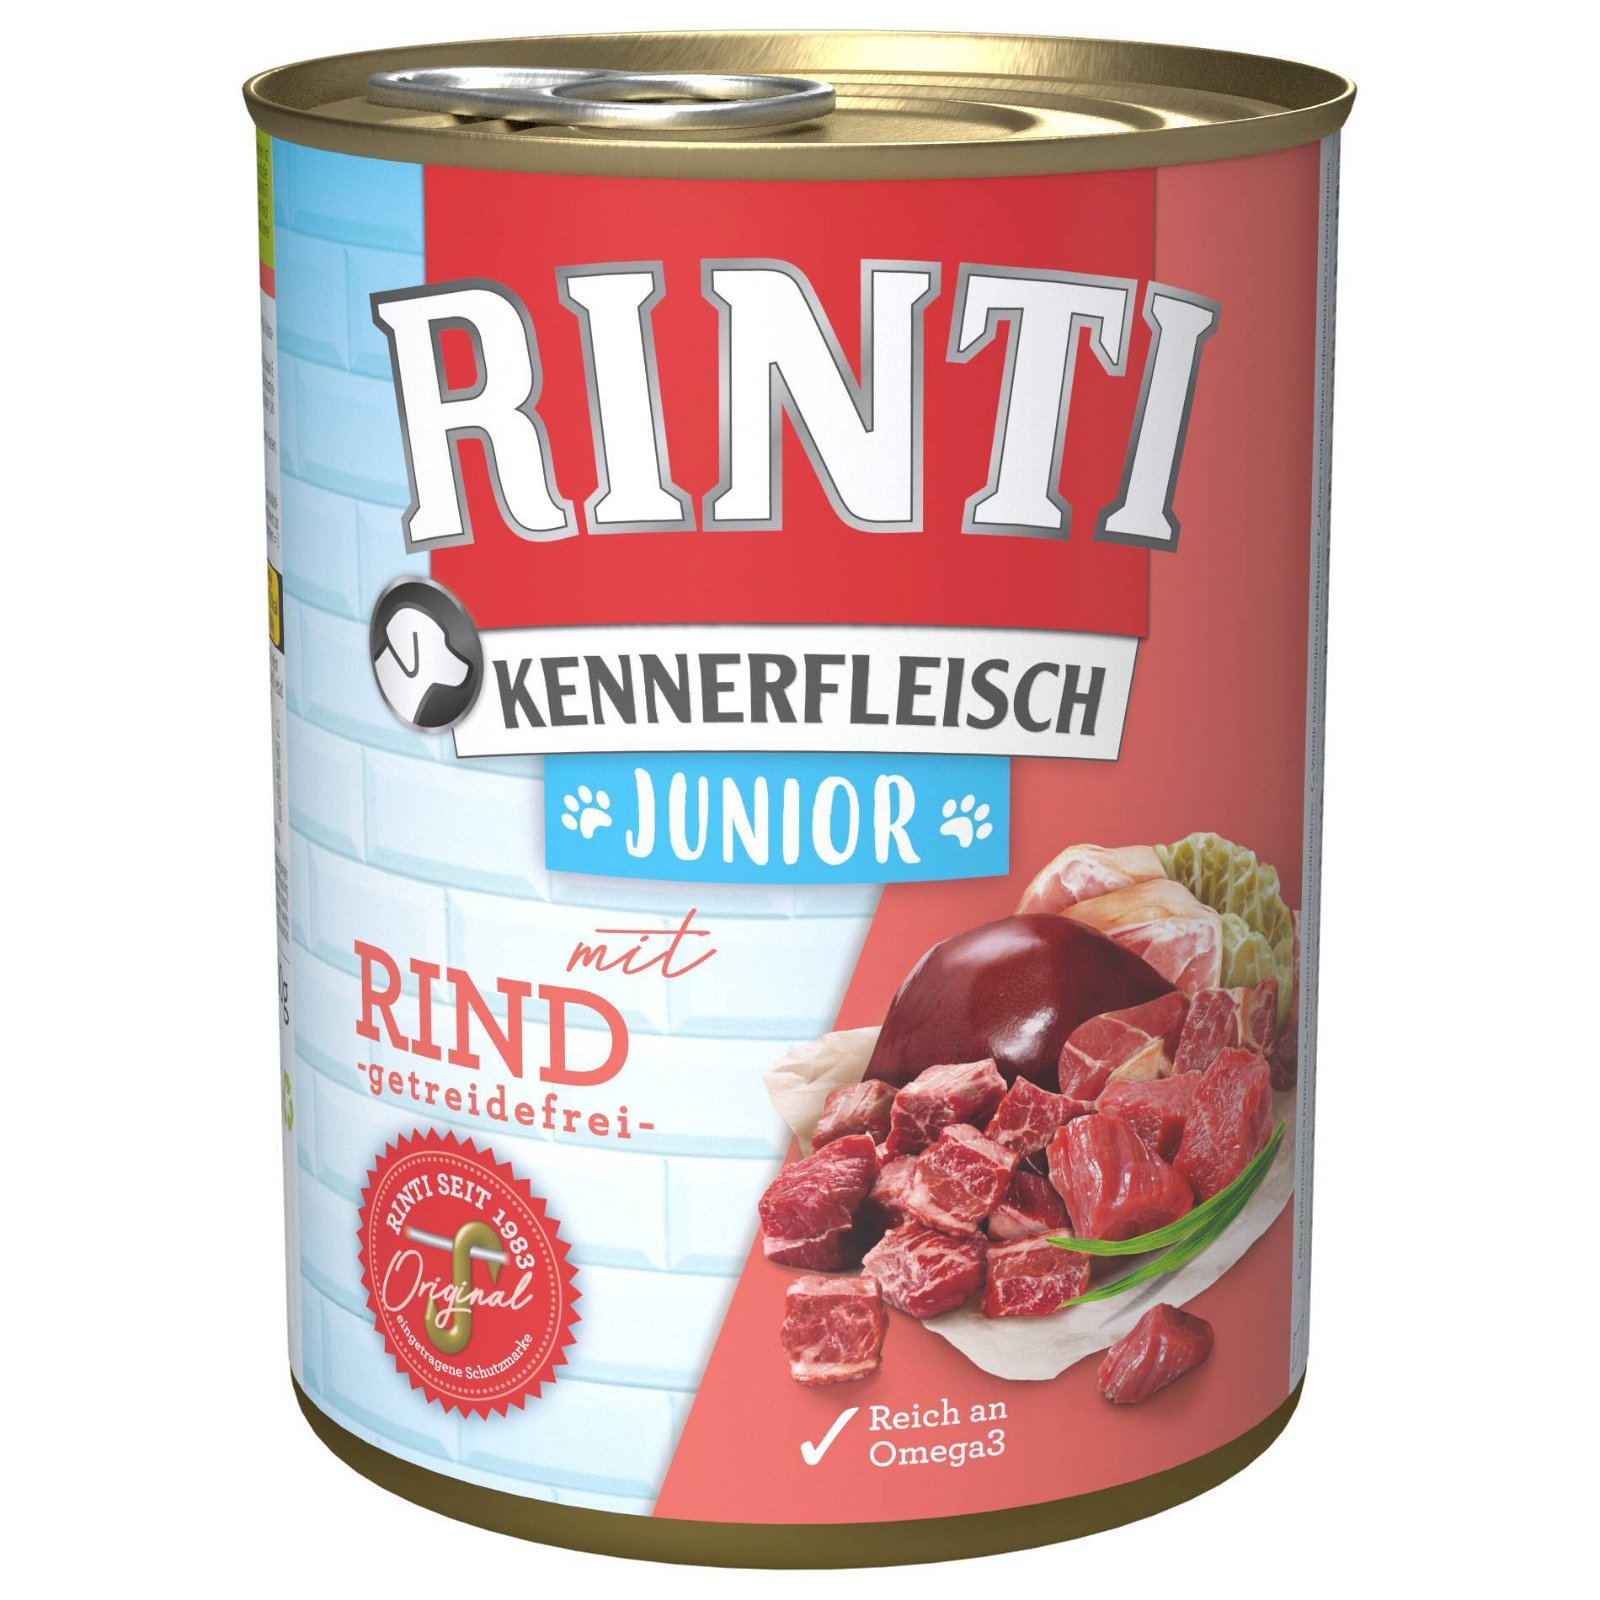 Hundefutter, Finnern Rinti Kennerfleisch Junior, Rind, 800g